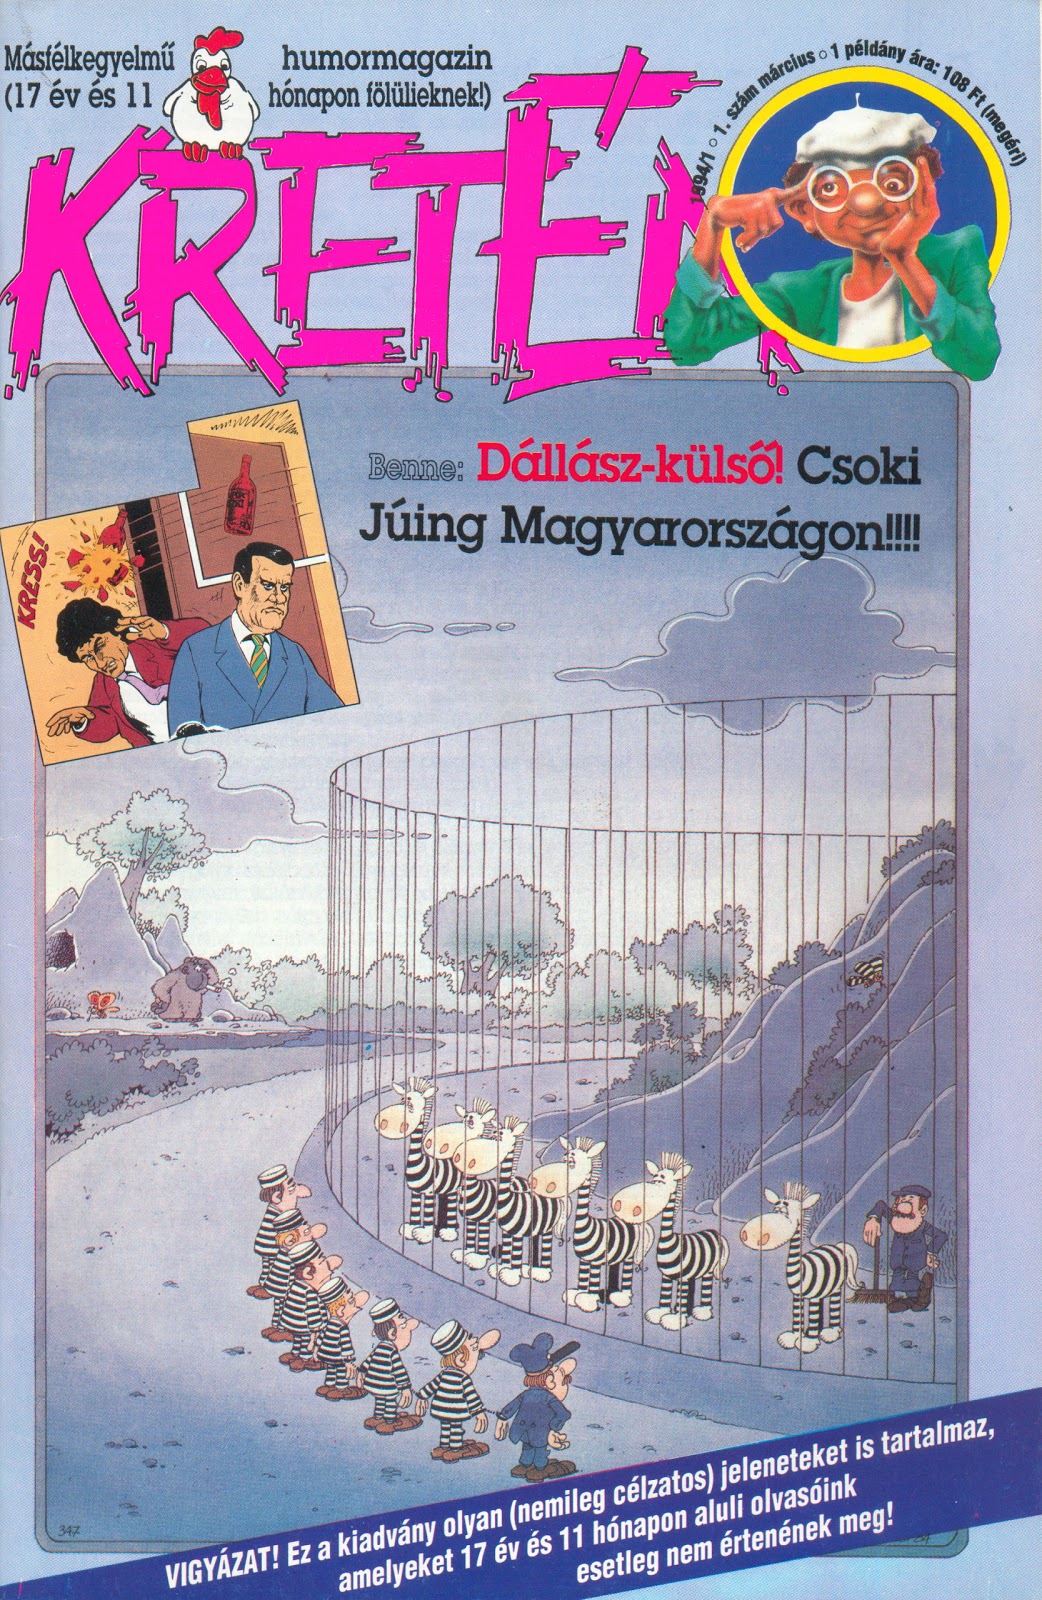 Kretén Magazin (1994 - 2009) - Biró Zoltán Blogja